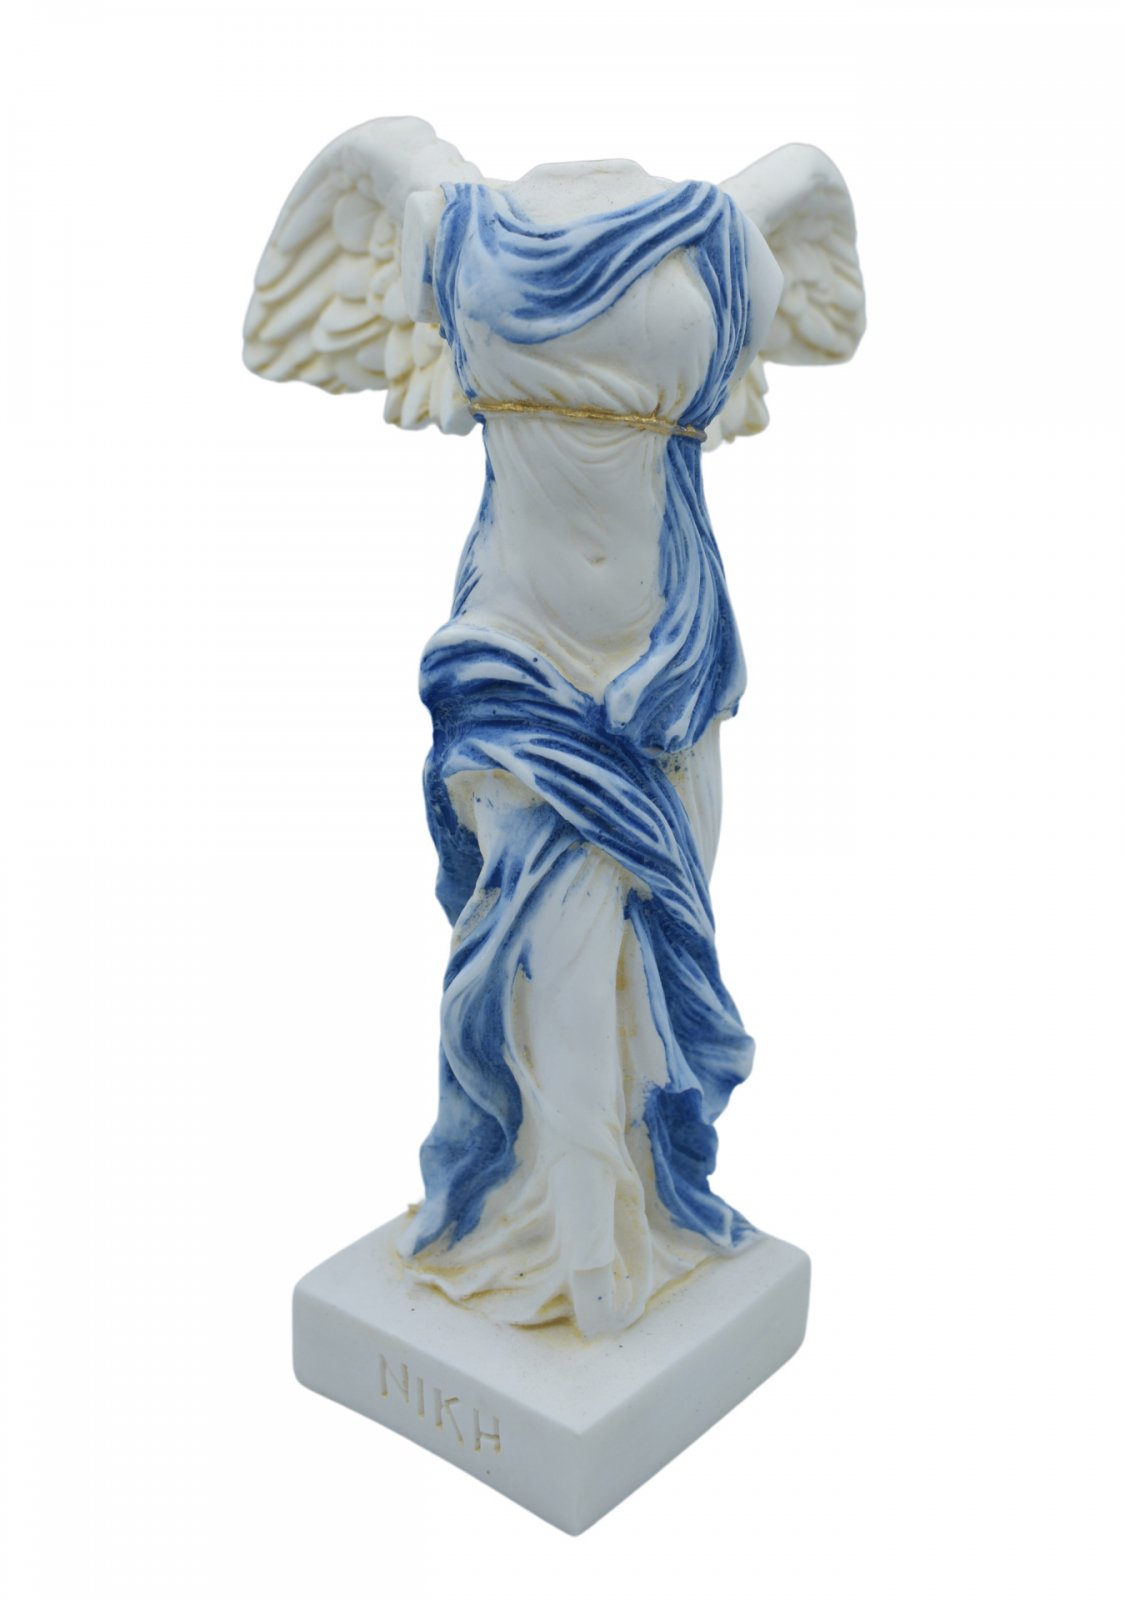 Nike of Samothrace greek alabaster statue with color and golden details